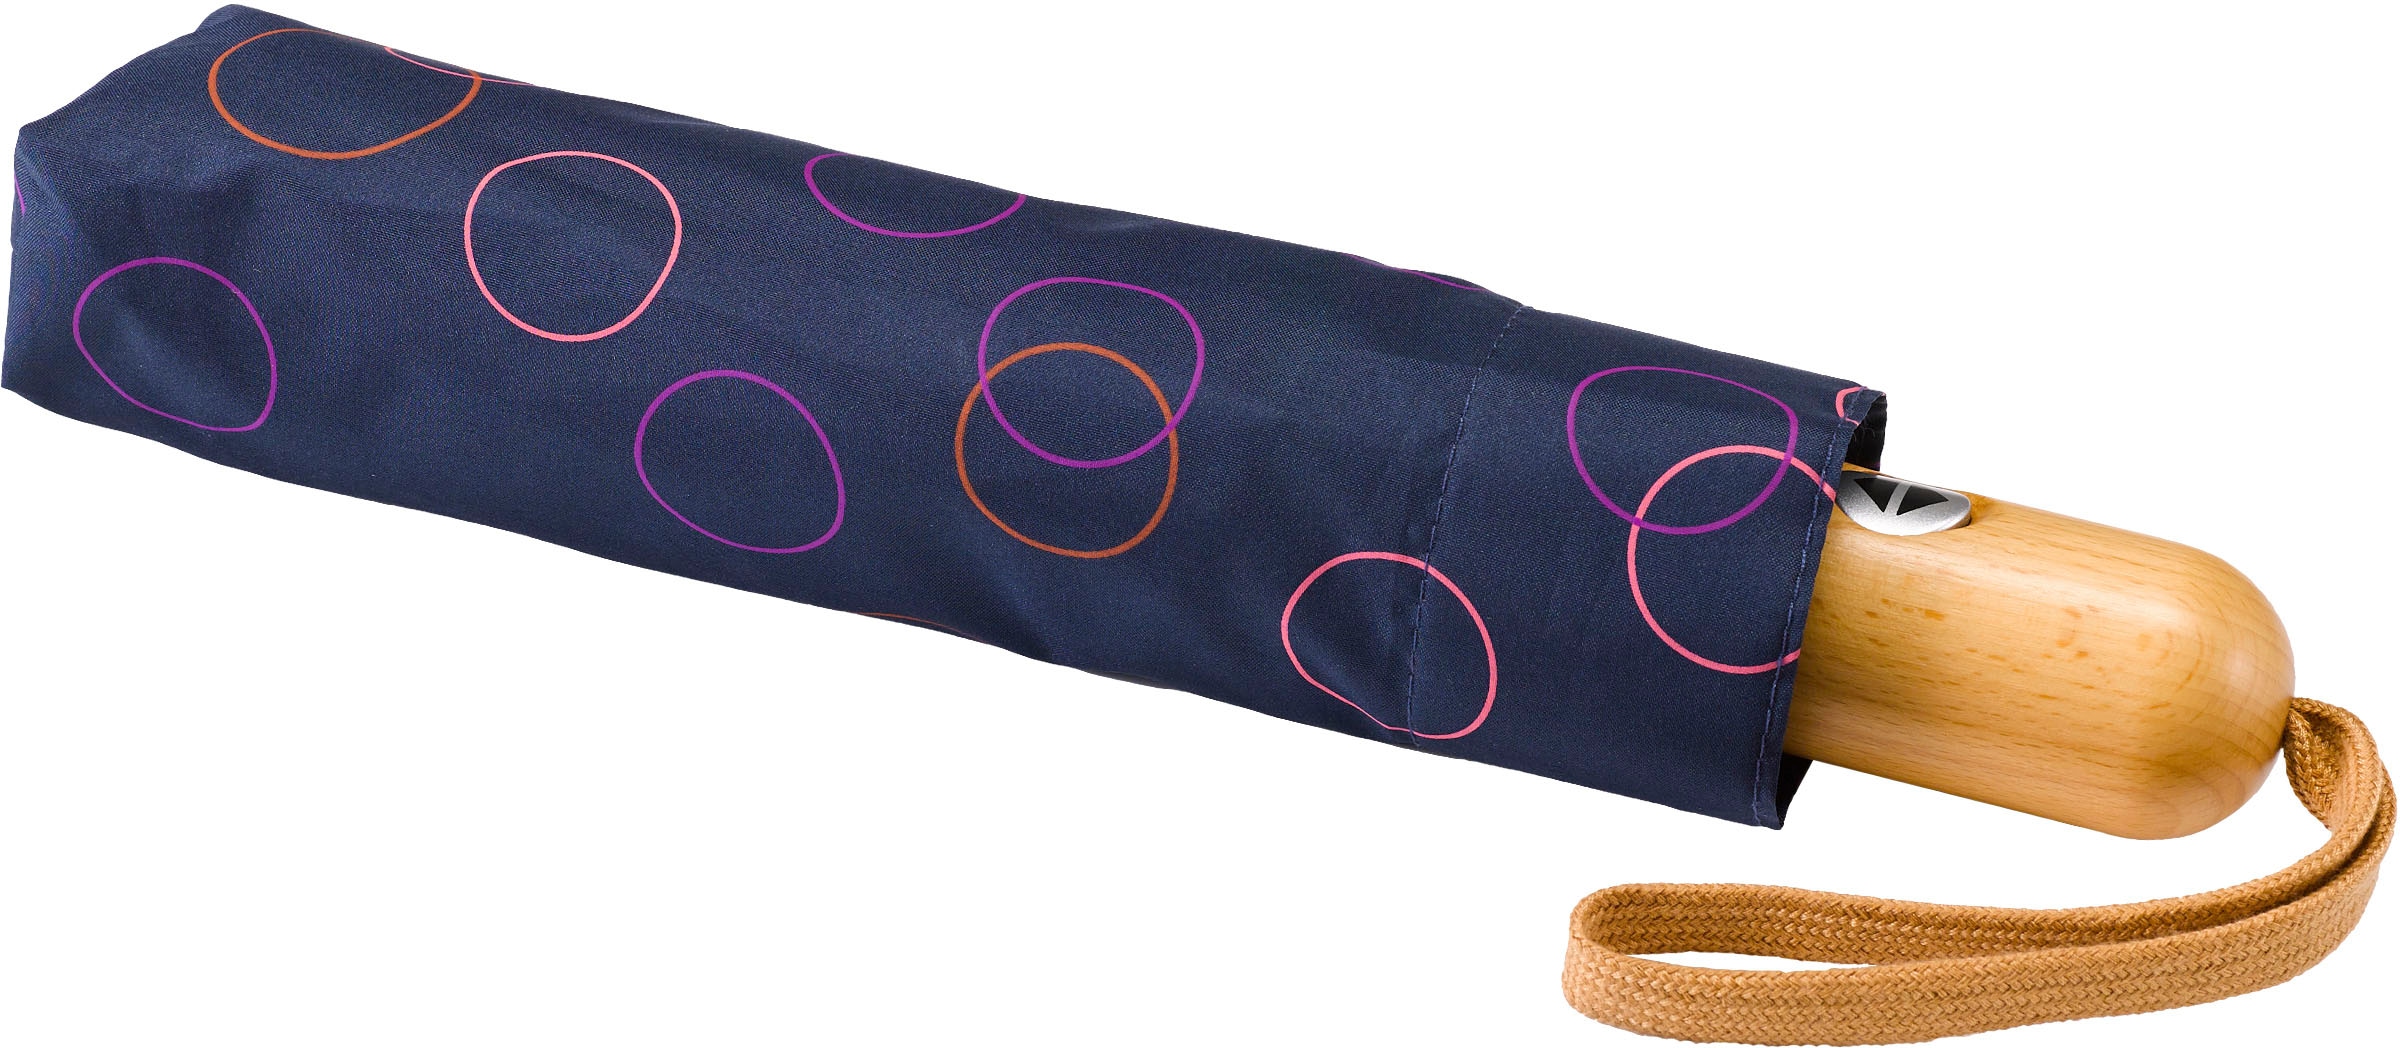 pink« »Umwelt-Taschenschirm, Kreise marine, kaufen Taschenregenschirm EuroSCHIRM®